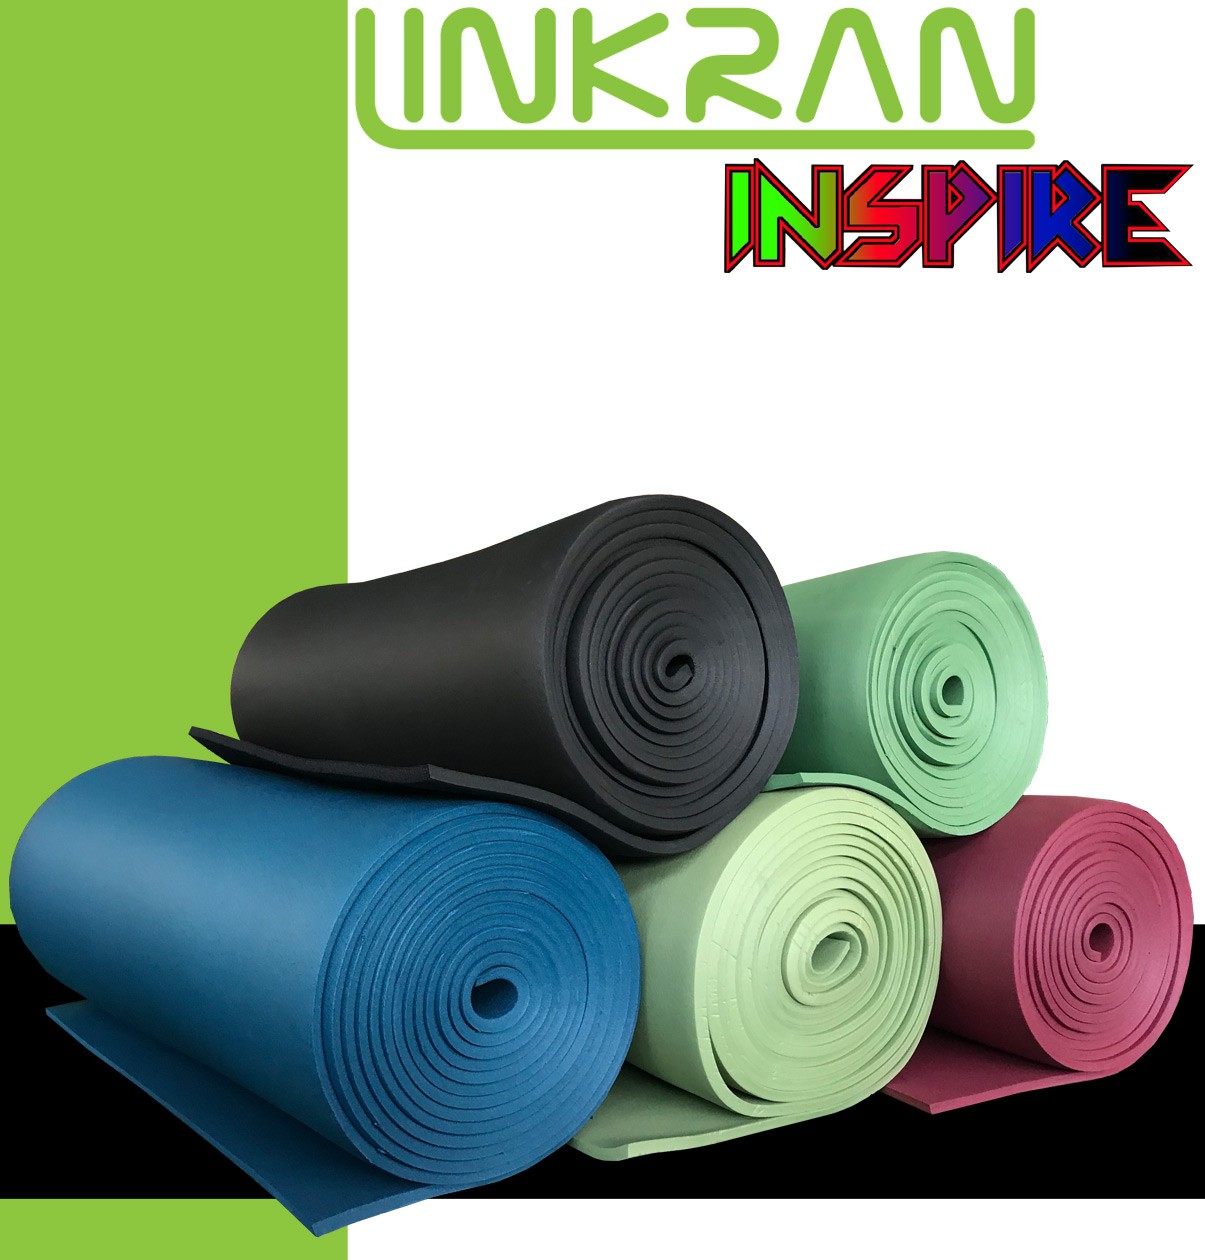 العزل المرن INSPIRE- 
مجموعة لينكران الصناعية LINKRAN